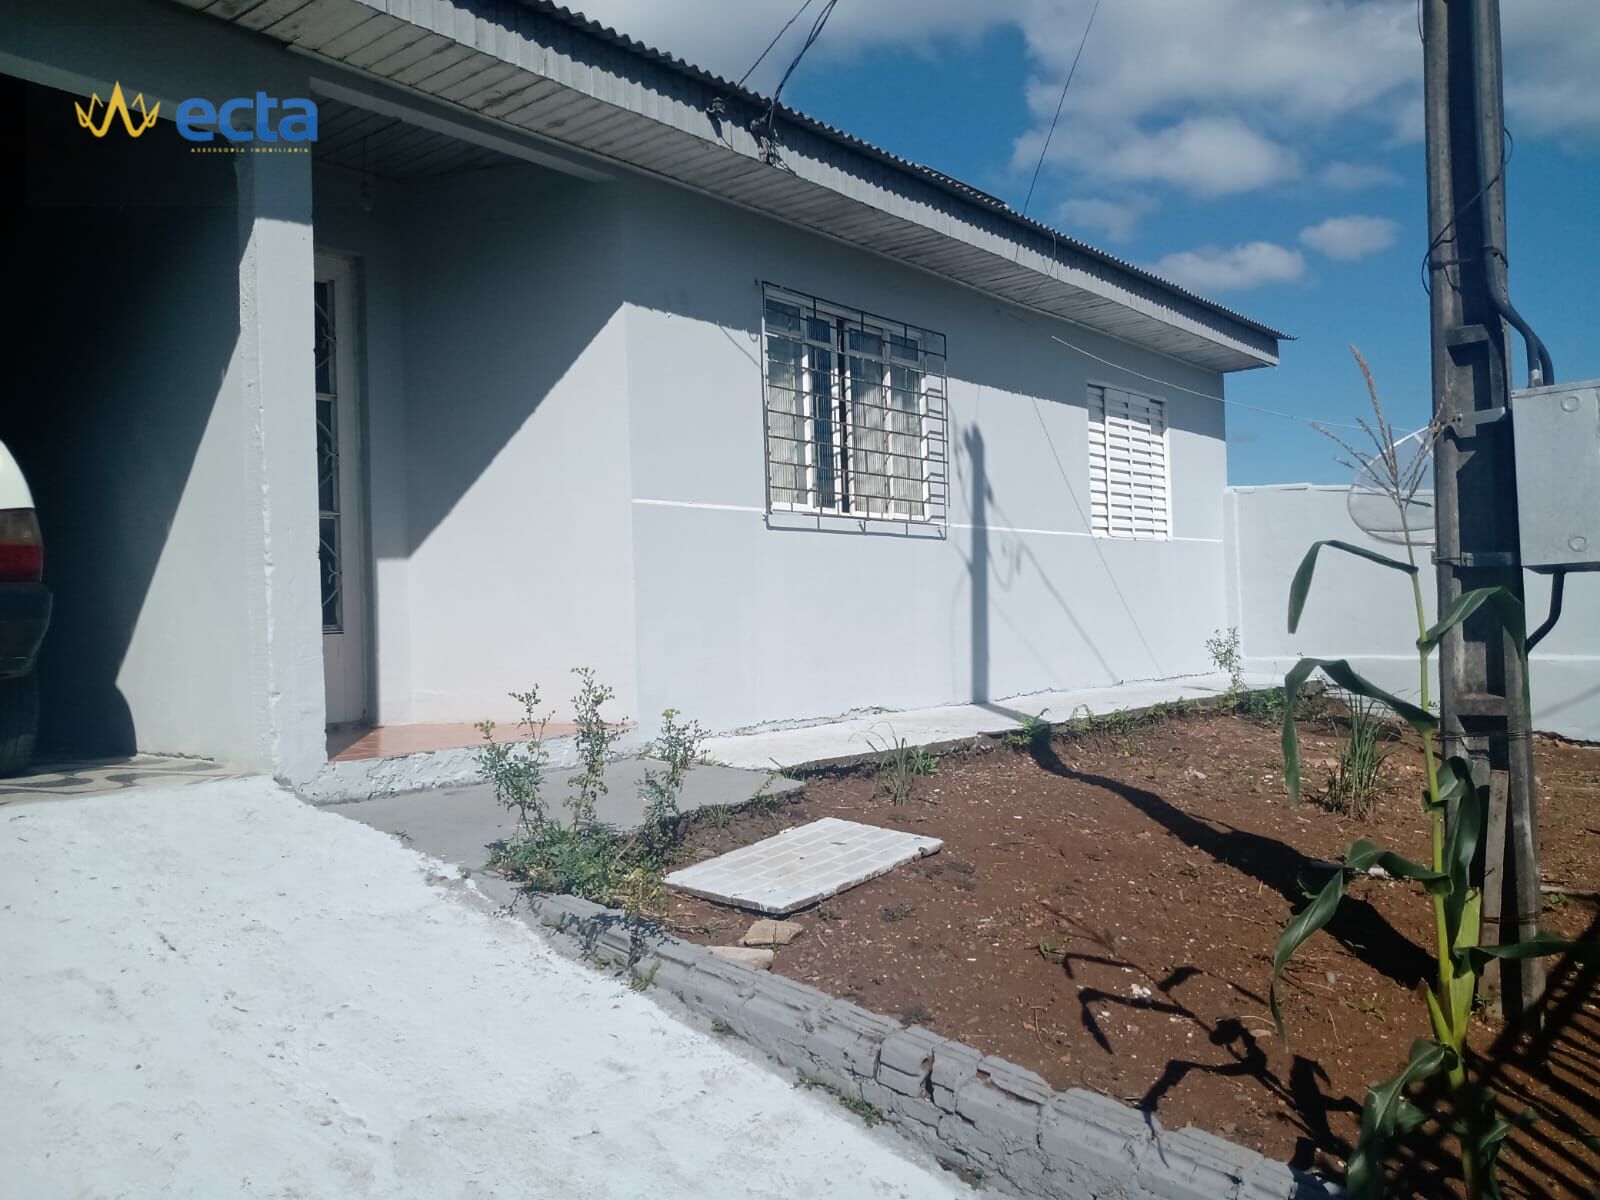 Casa com 2 dormitórios à venda, Boqueirão, GUARAPUAVA - PR